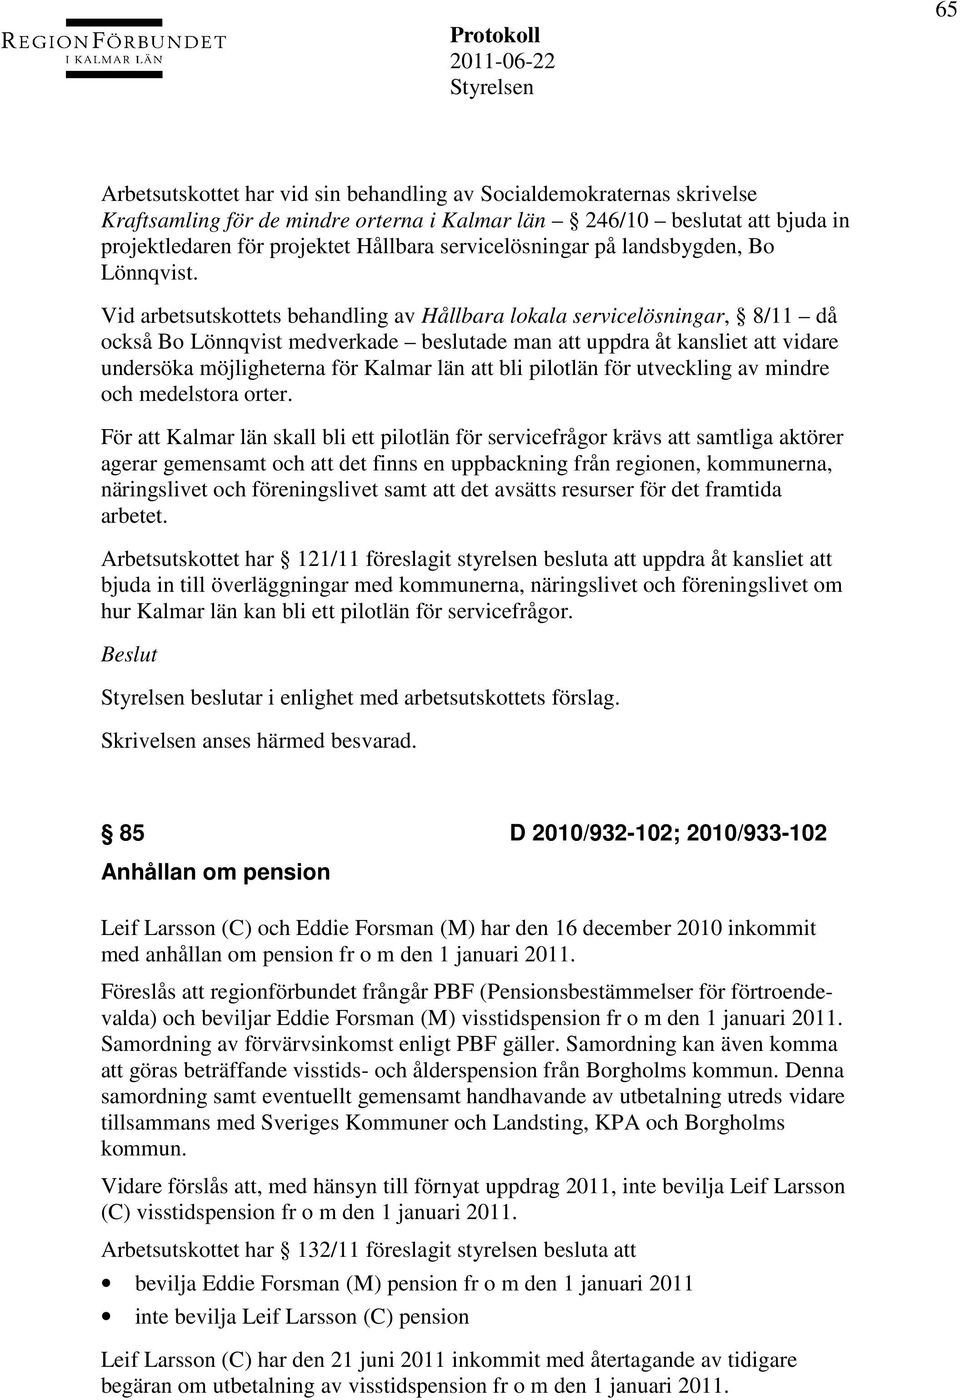 Vid arbetsutskottets behandling av Hållbara lokala servicelösningar, 8/11 då också Bo Lönnqvist medverkade beslutade man att uppdra åt kansliet att vidare undersöka möjligheterna för Kalmar län att